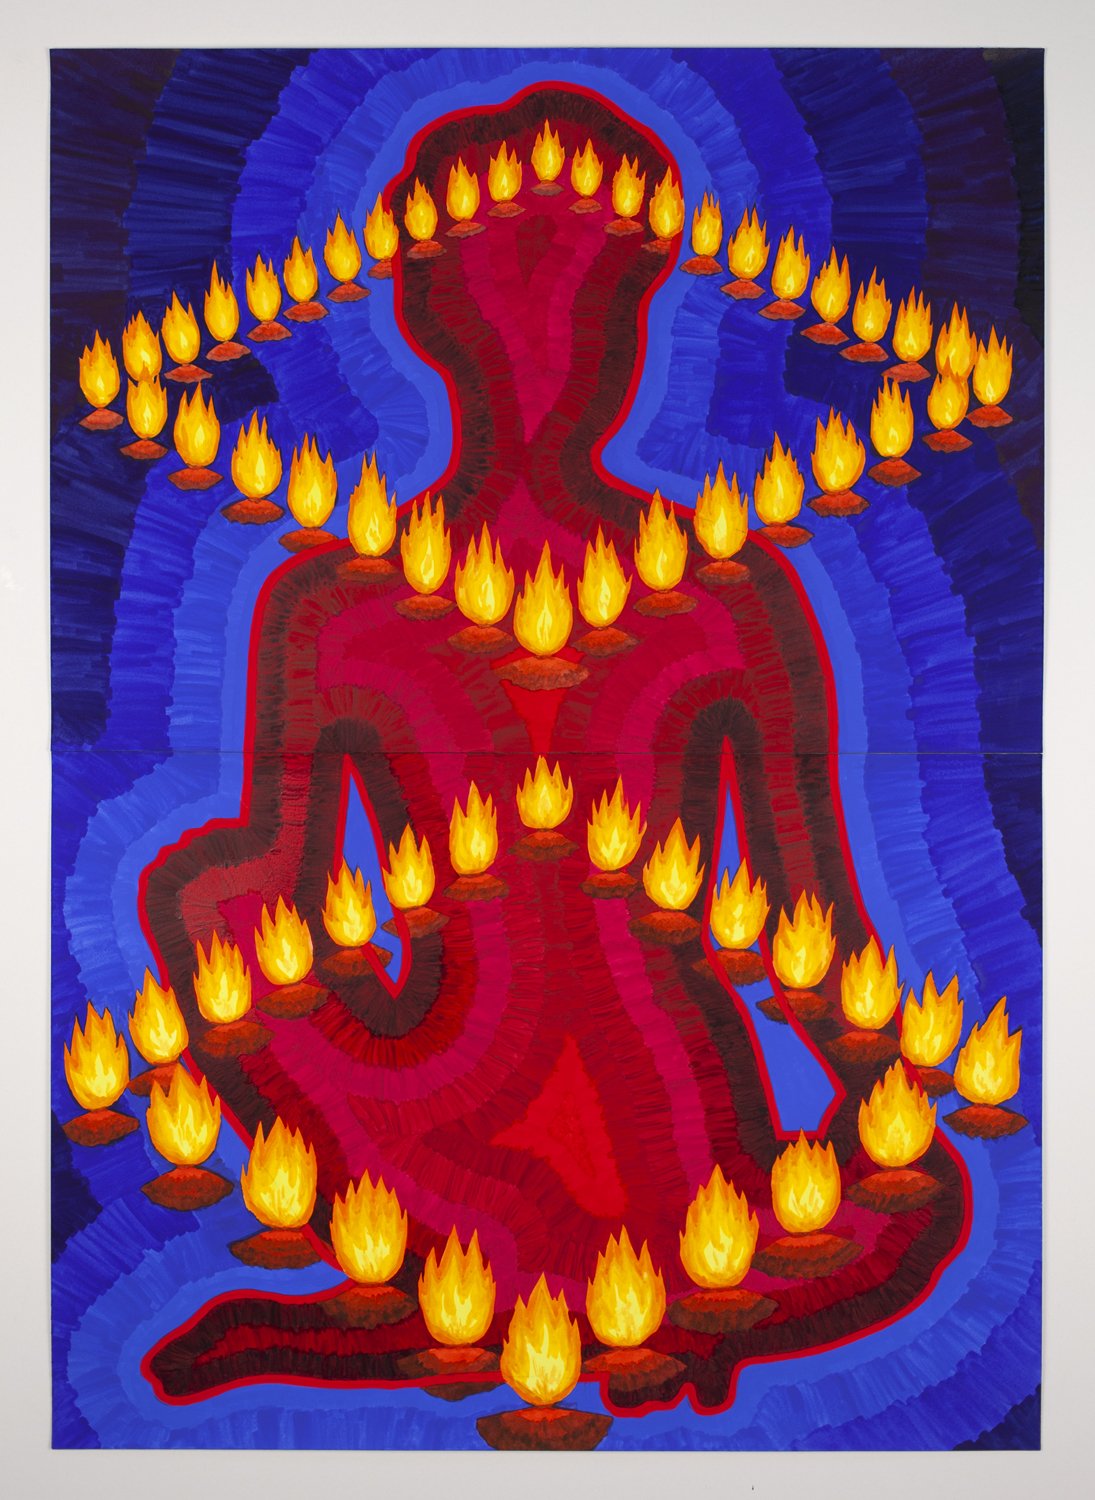 Flame Figure III (Burning Hot)